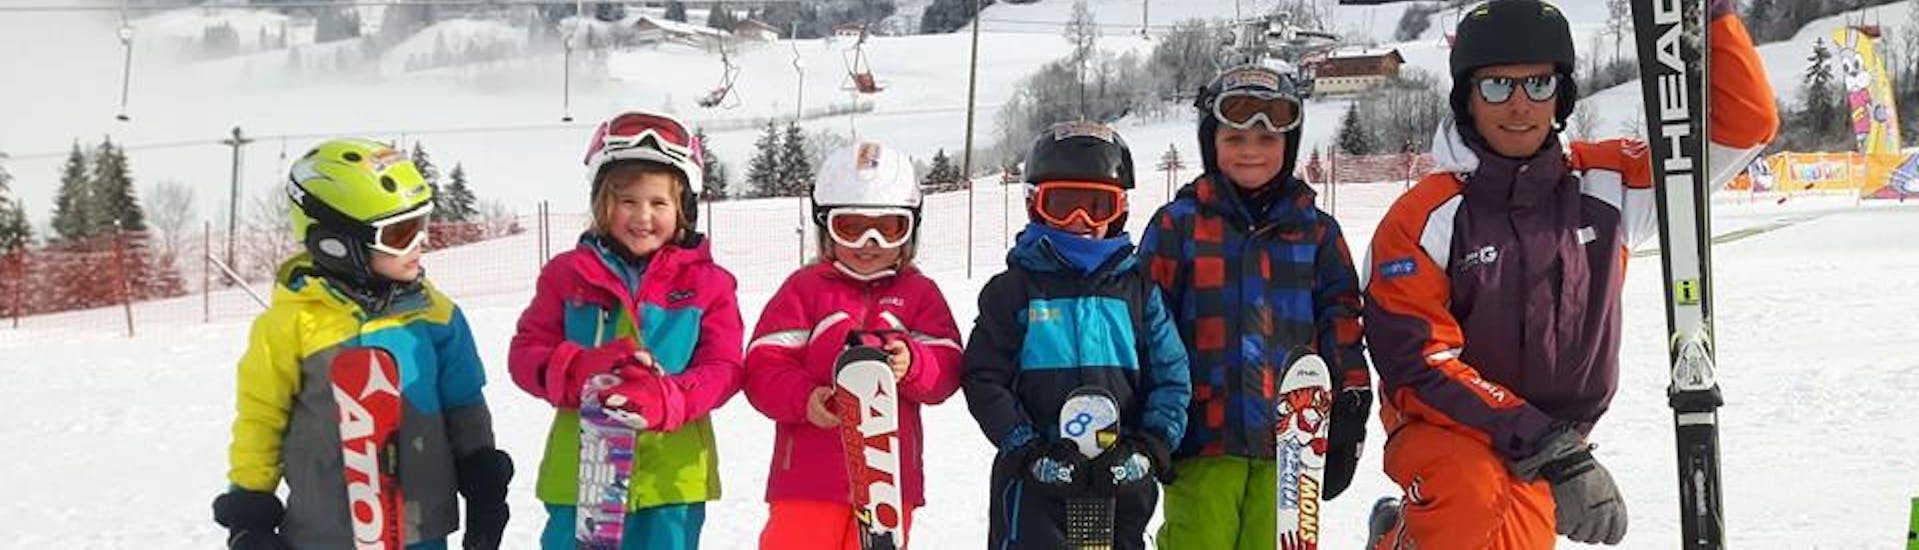 Skilessen voor Kinderen (4-6 jaar) + Skiverhuur voor Alle Niveaus met Skischule Toni Gruber.